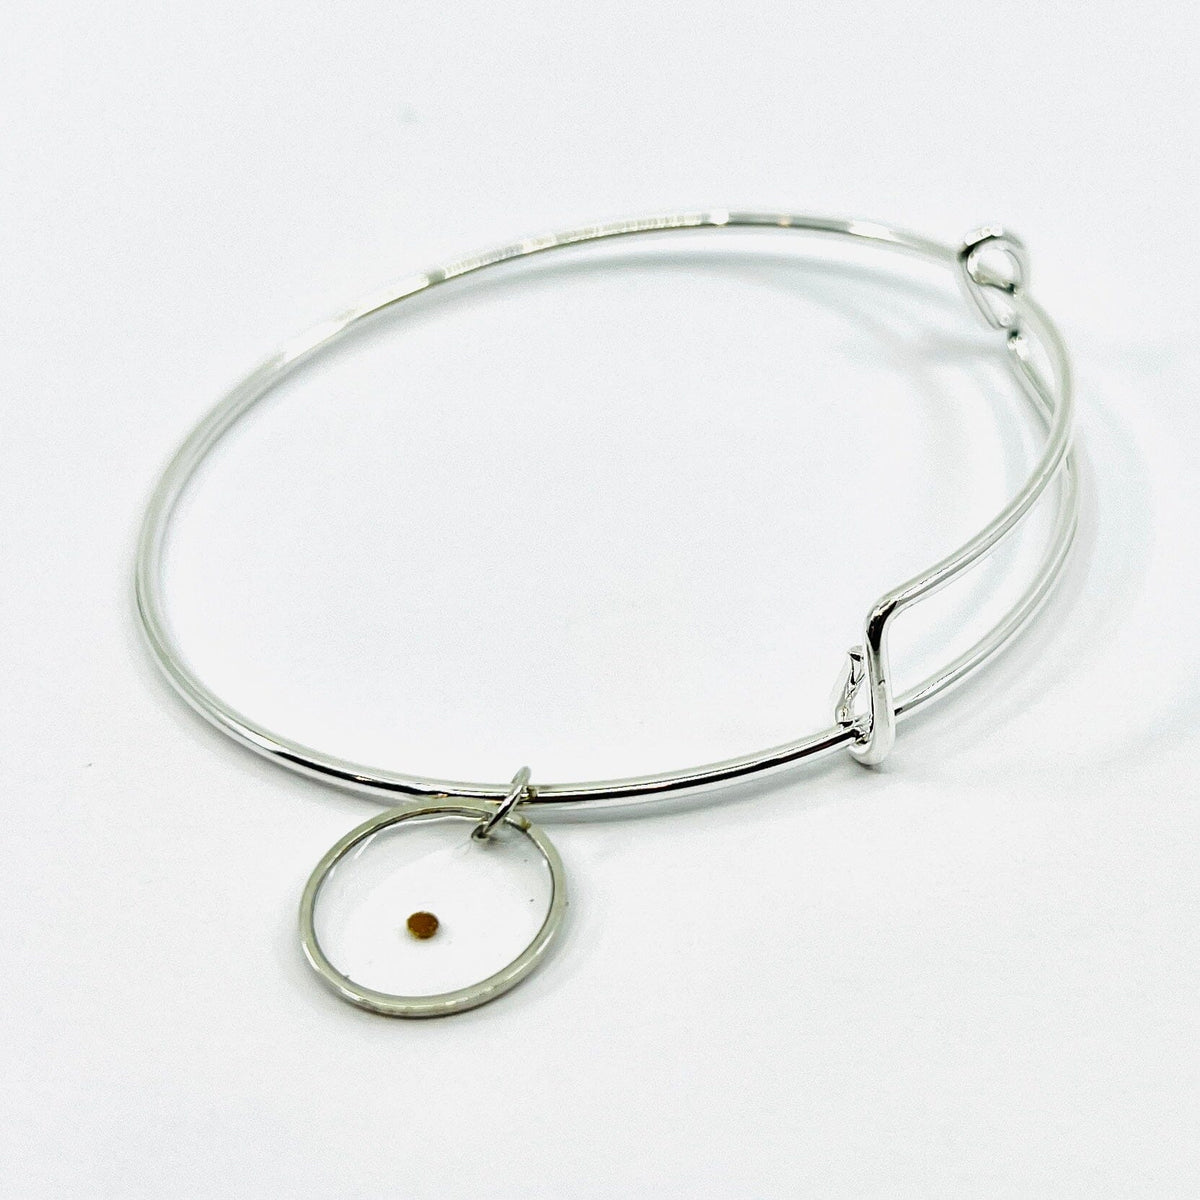 Mustard Seed Wire Bracelet Jewelry - 